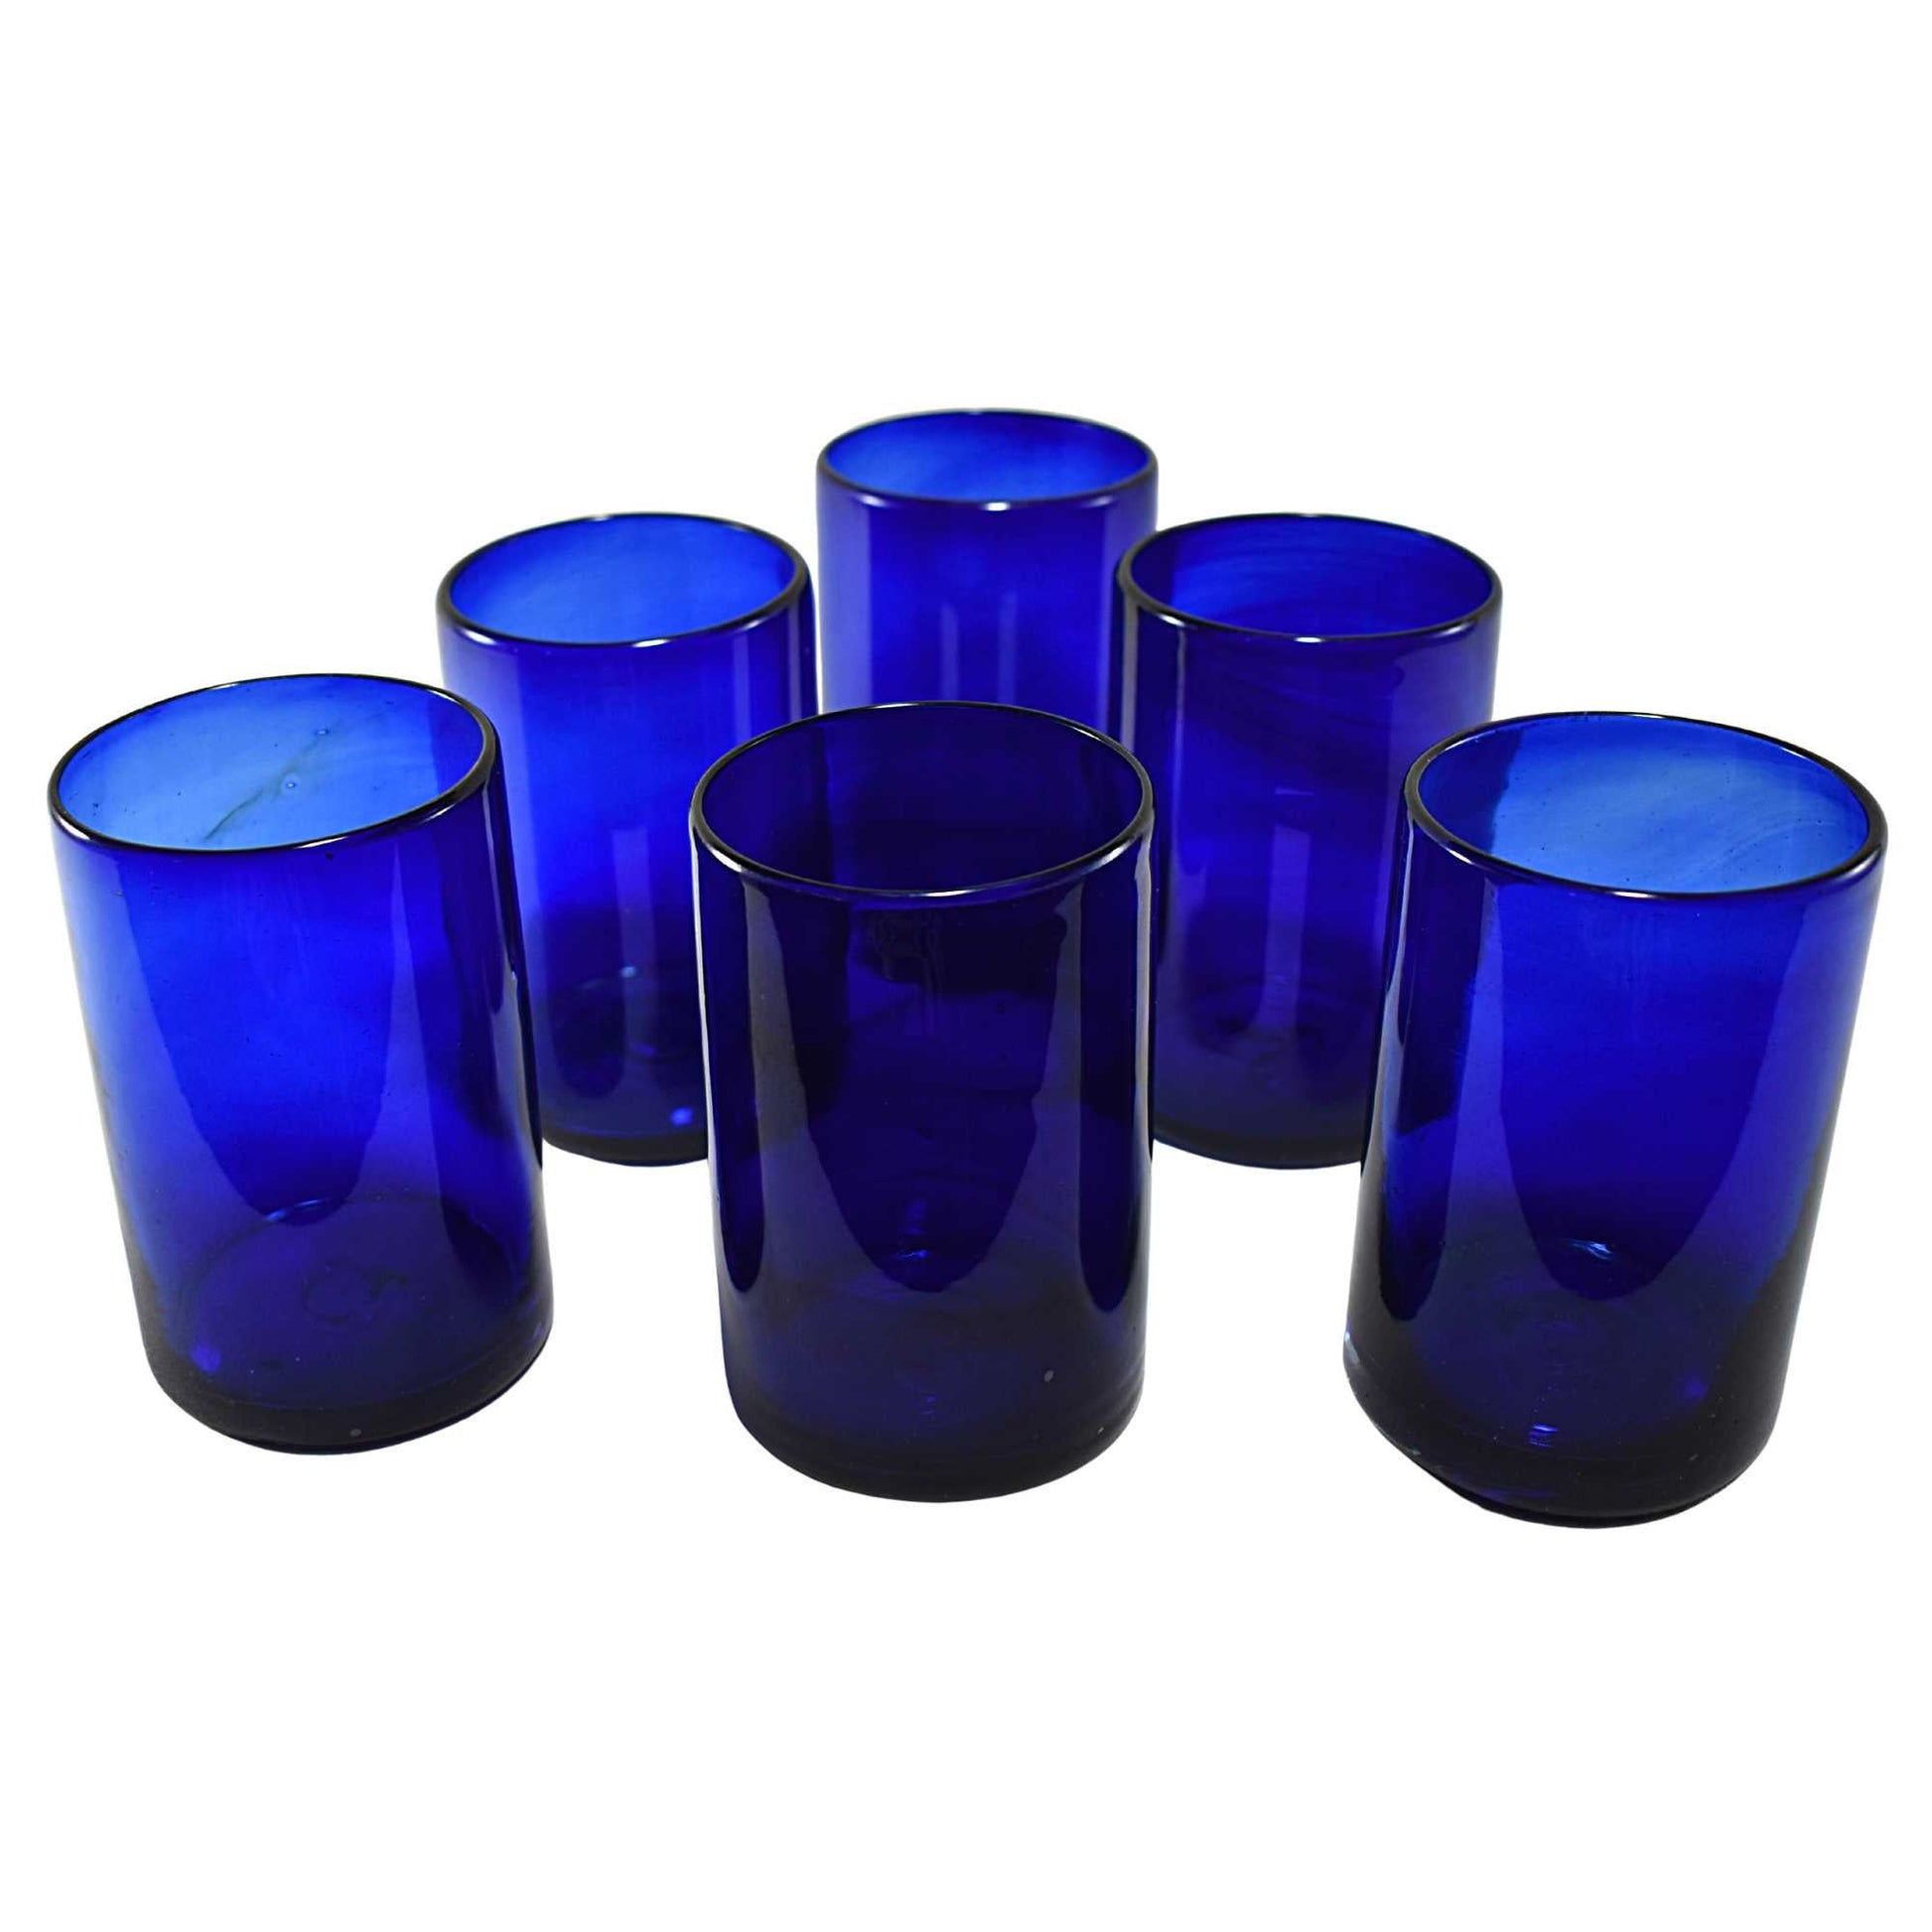 https://www.marey.com.mx/cdn/shop/products/vasos-vidrio-soplado-para-agua-set-de-6-piezas-hechos-artesanalmente-en-mexico-vidrio-reciclado-artesanal-azul-cobalto-16-oz-drinking-glasses-mareyhomegoods-832787.jpg?v=1694537036&width=1946